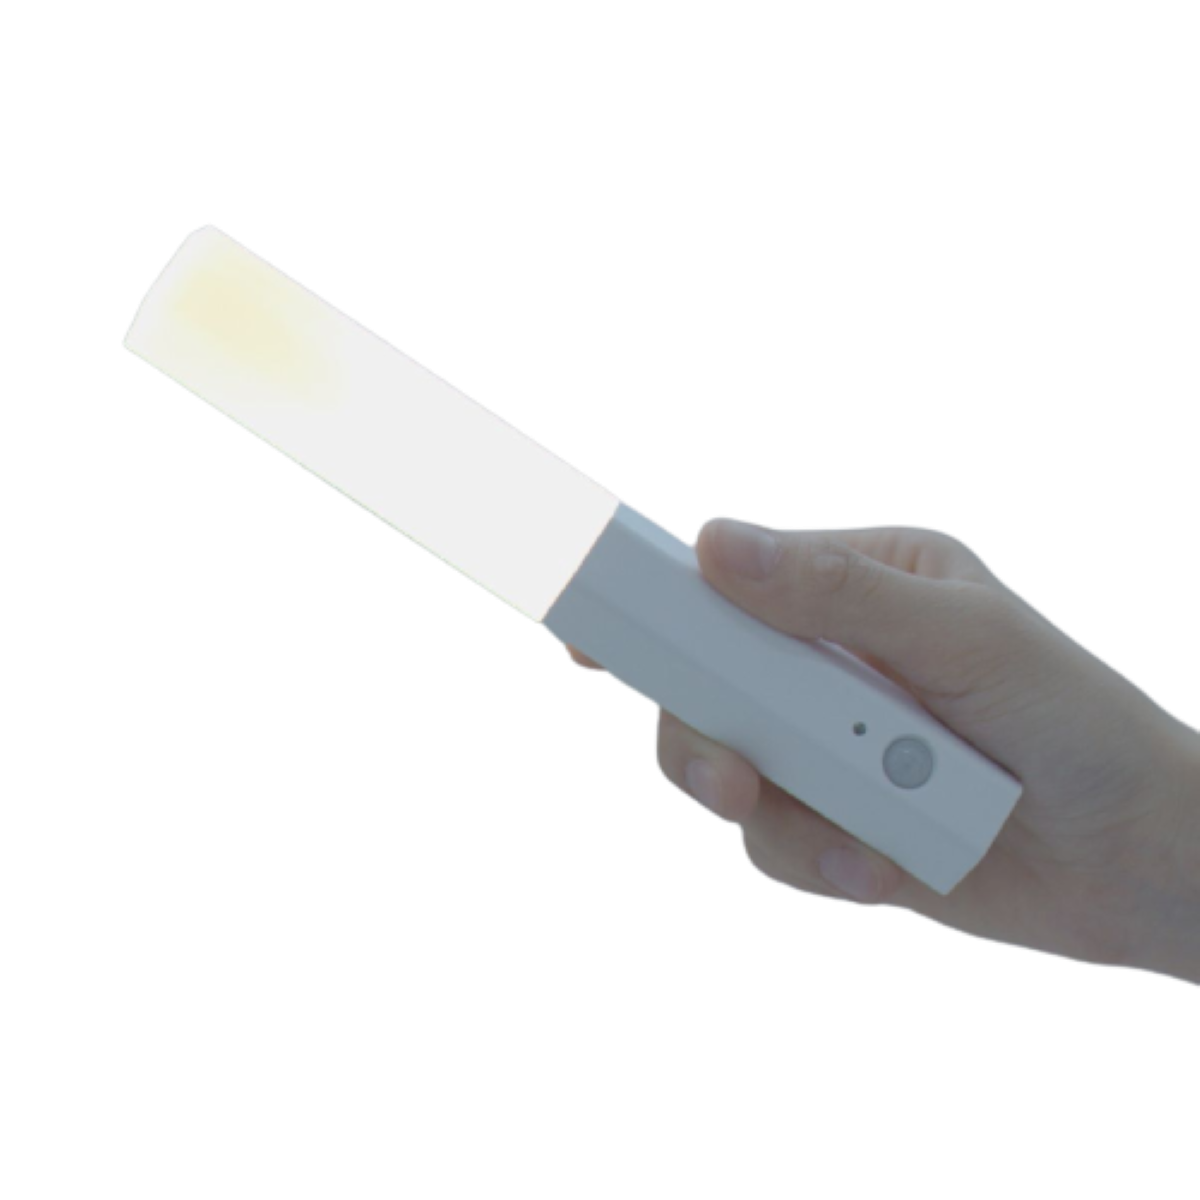 ENBAOXIN Wiederaufladbares USB-Nachtlicht - Intelligenter LED-Nachtlicht Magnet Körpersensor, leistungsstarker Gelb